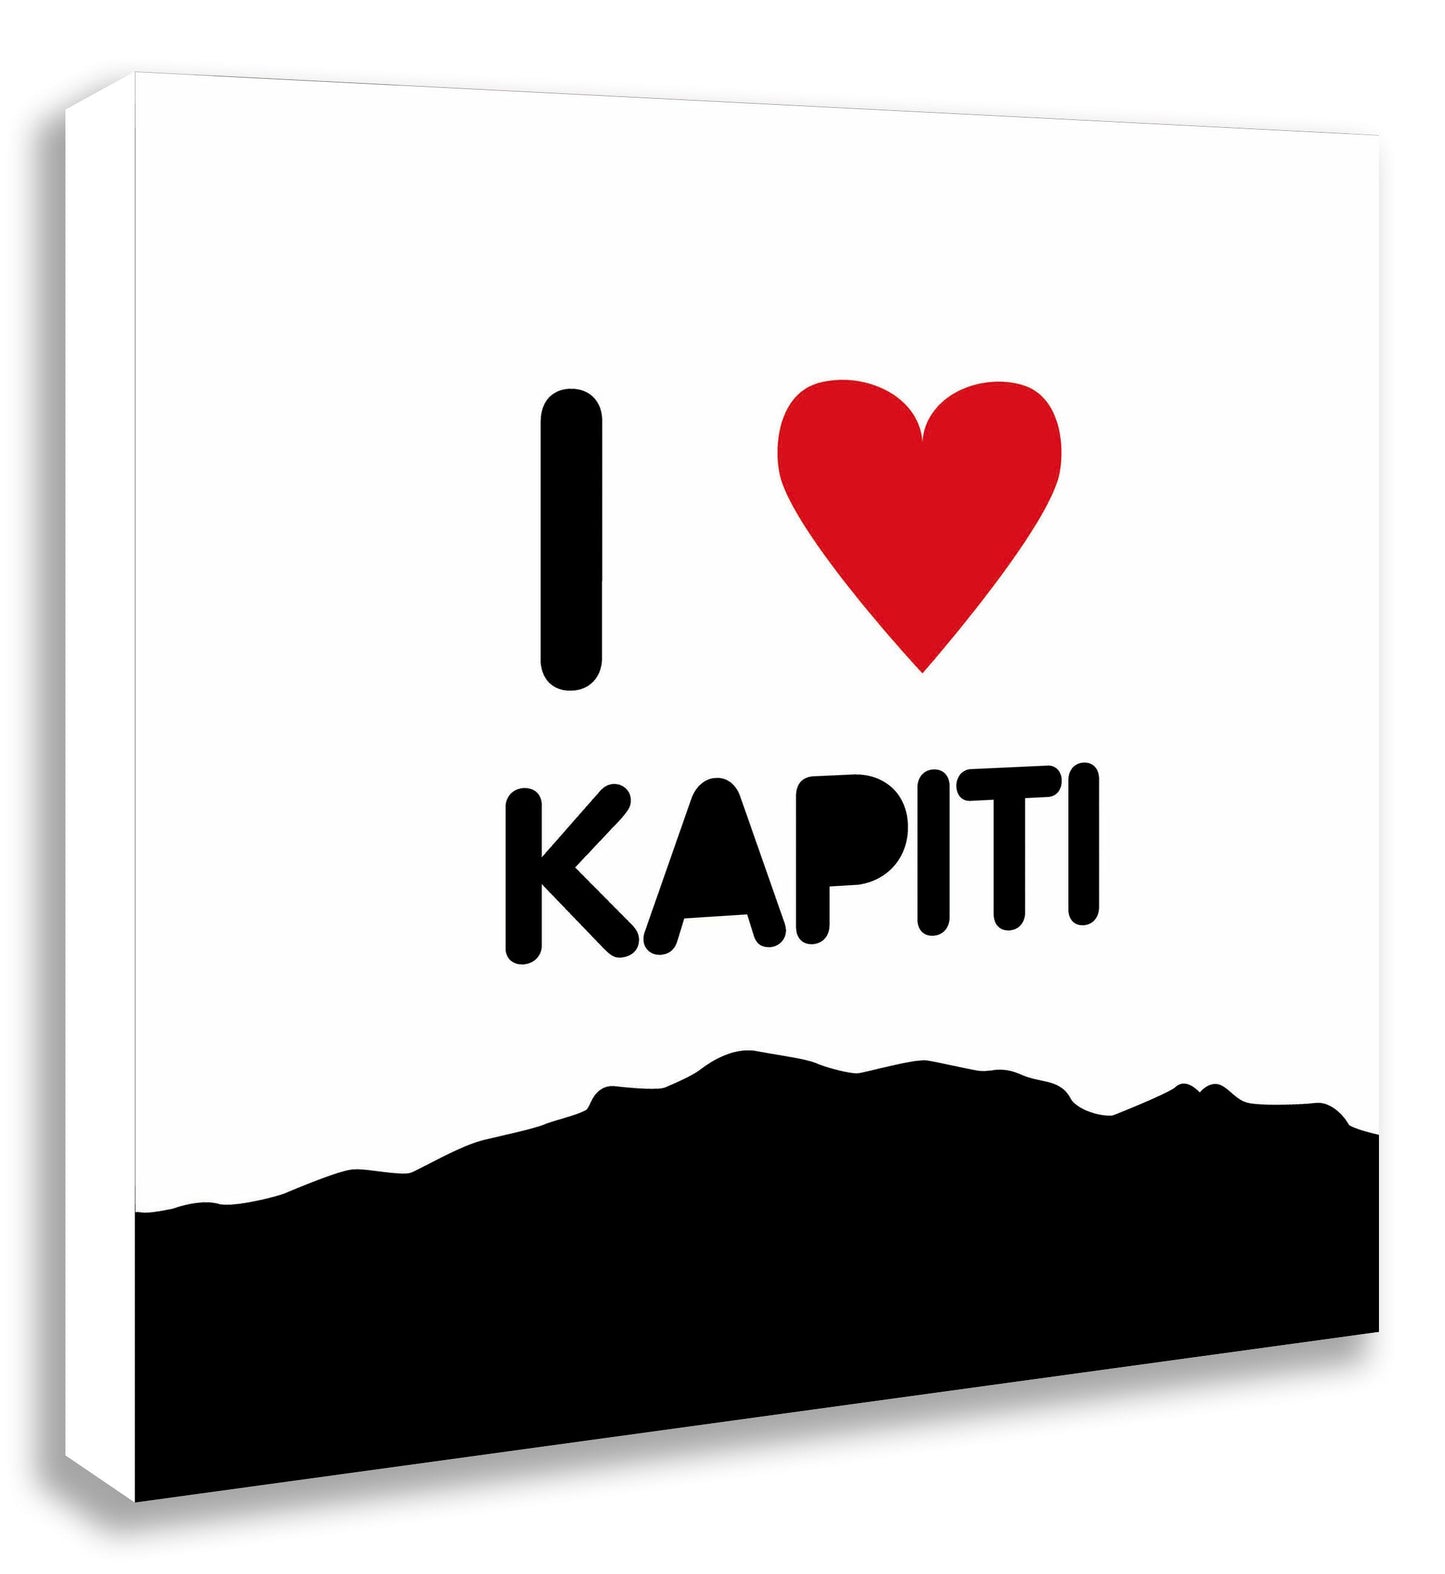 I heart Kapiti - Zoe Virtue